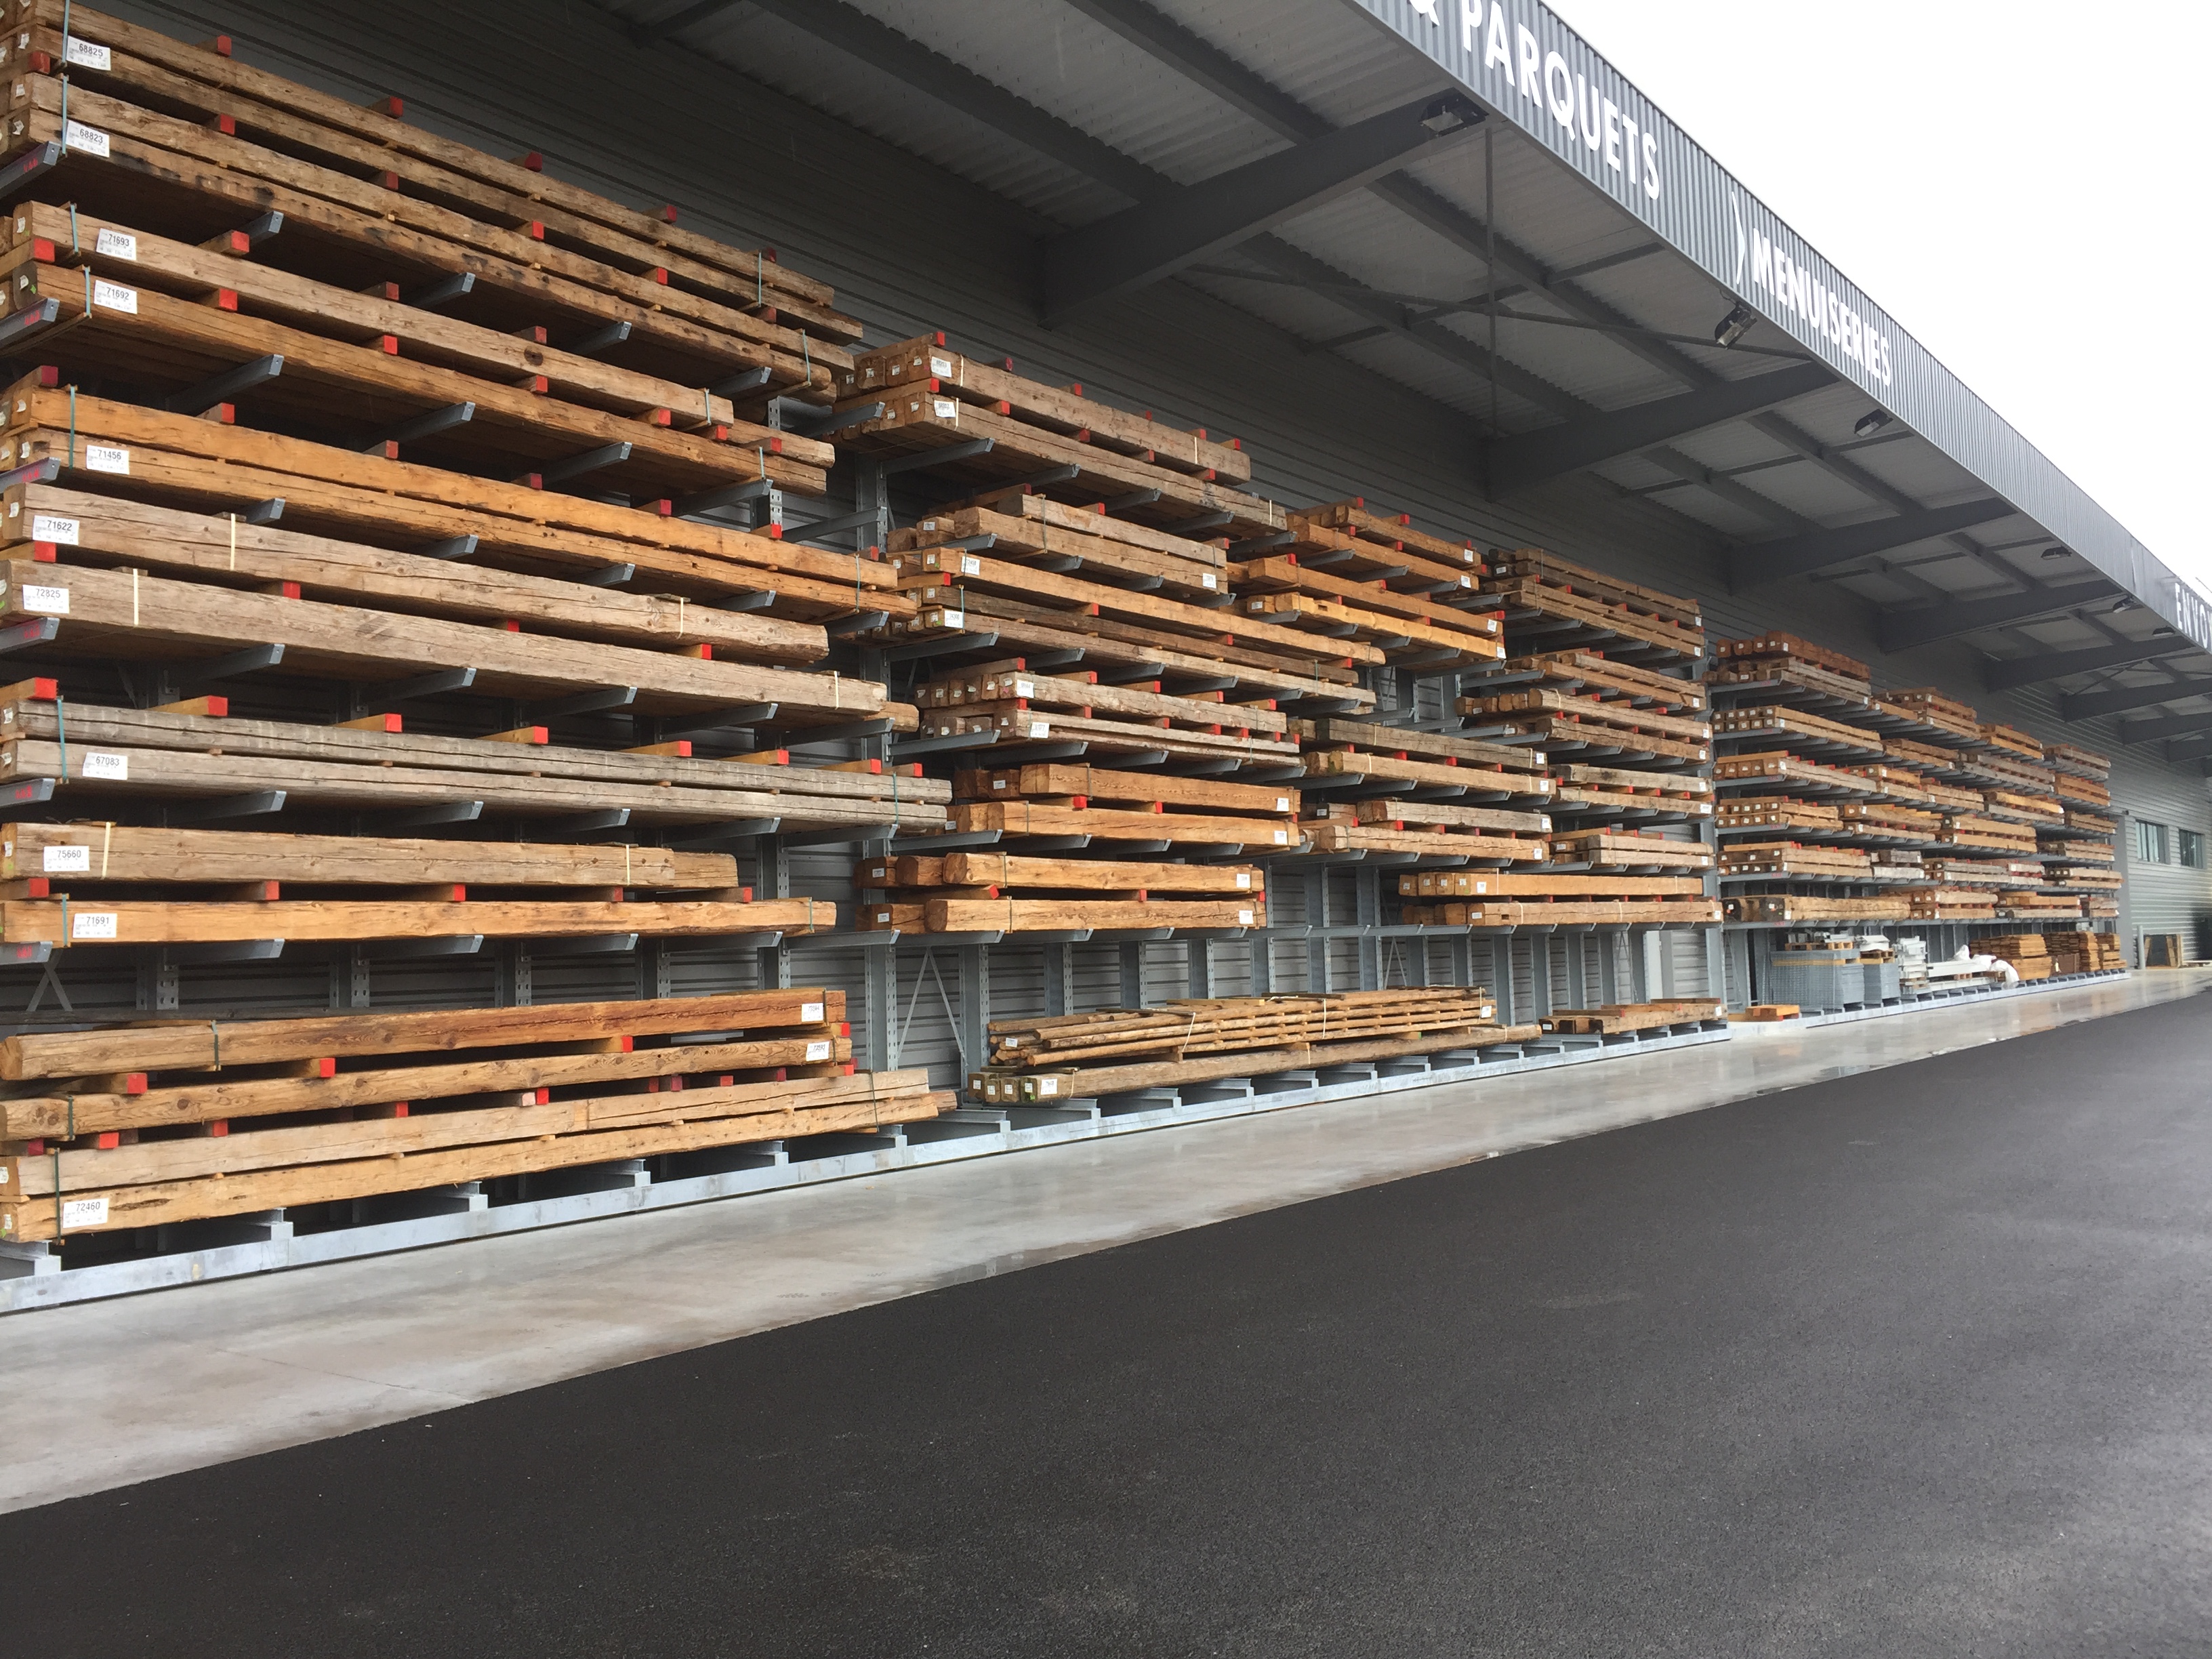 [Translate "Niederlande"] Cantilever racking timber trade